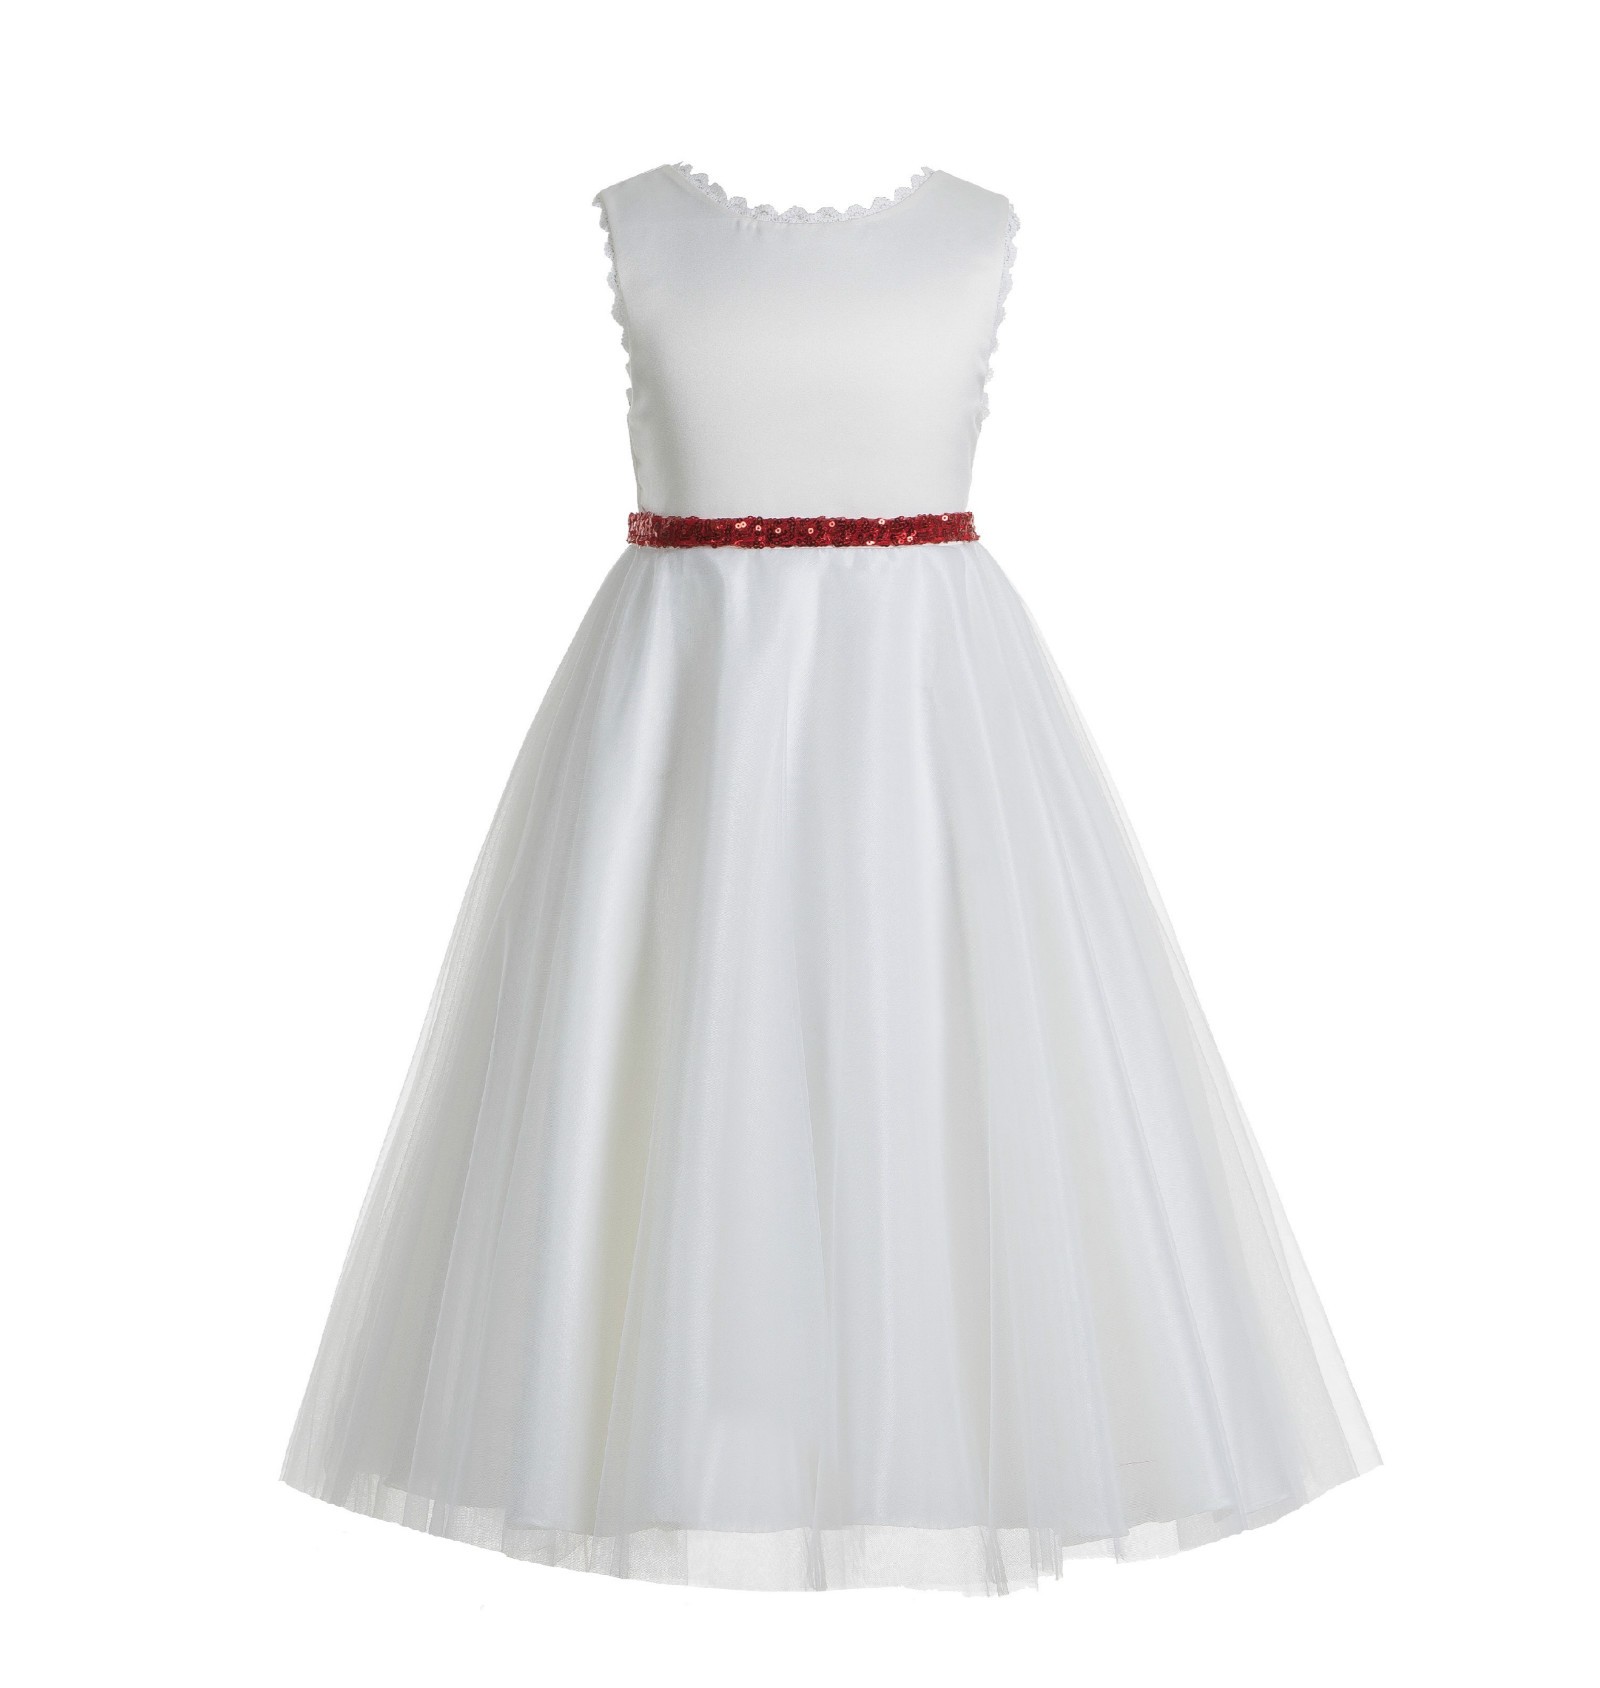 Ivory / Red V-Back Lace Edge Flower Girl Dress 183